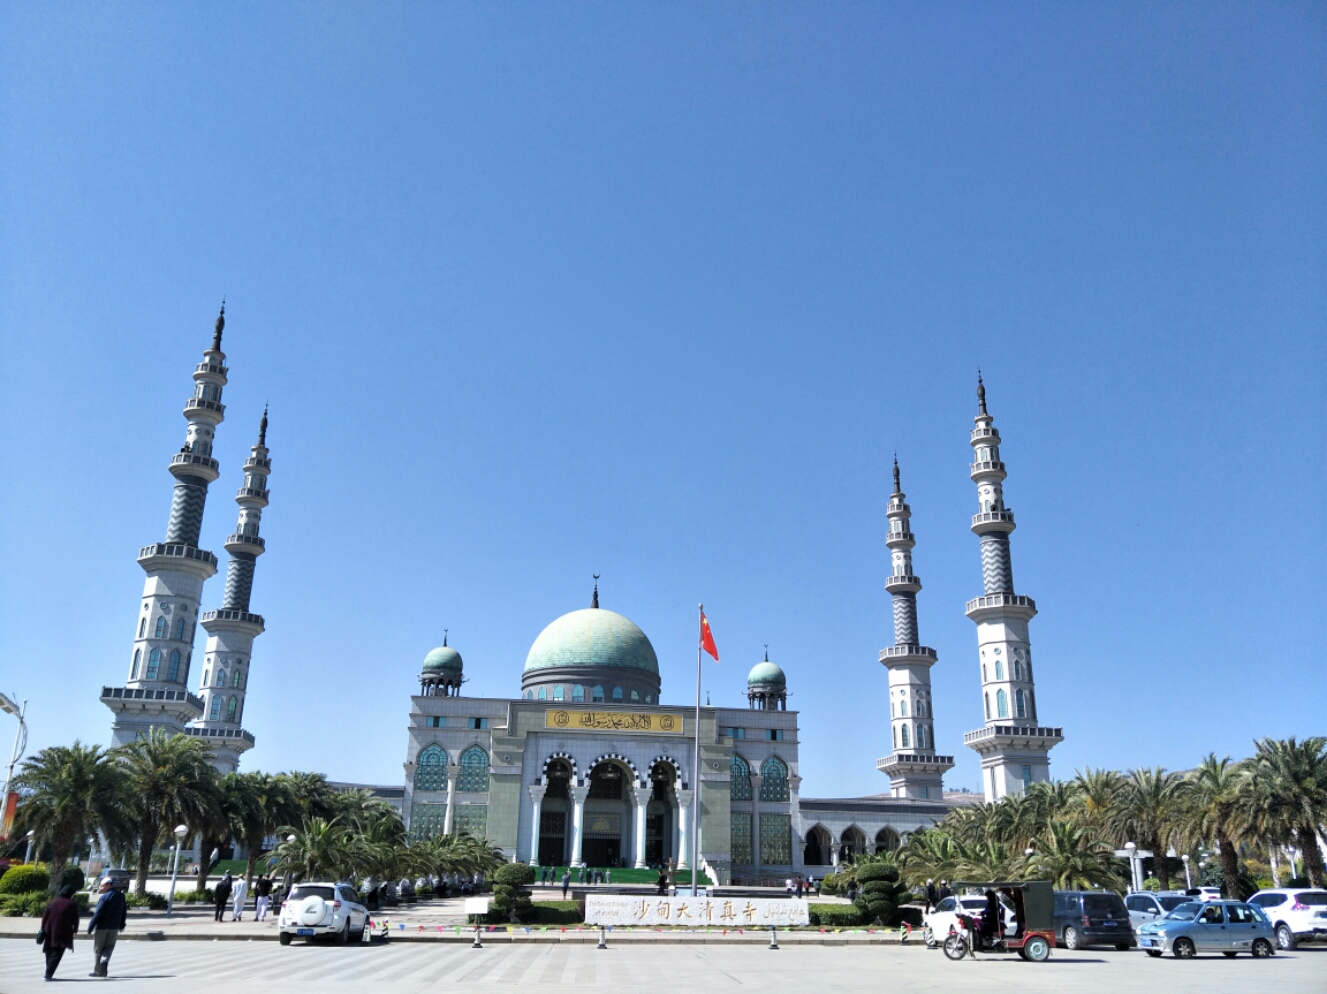 早就听说窦店清真寺是华北地区最大的清真寺，一直想去看看